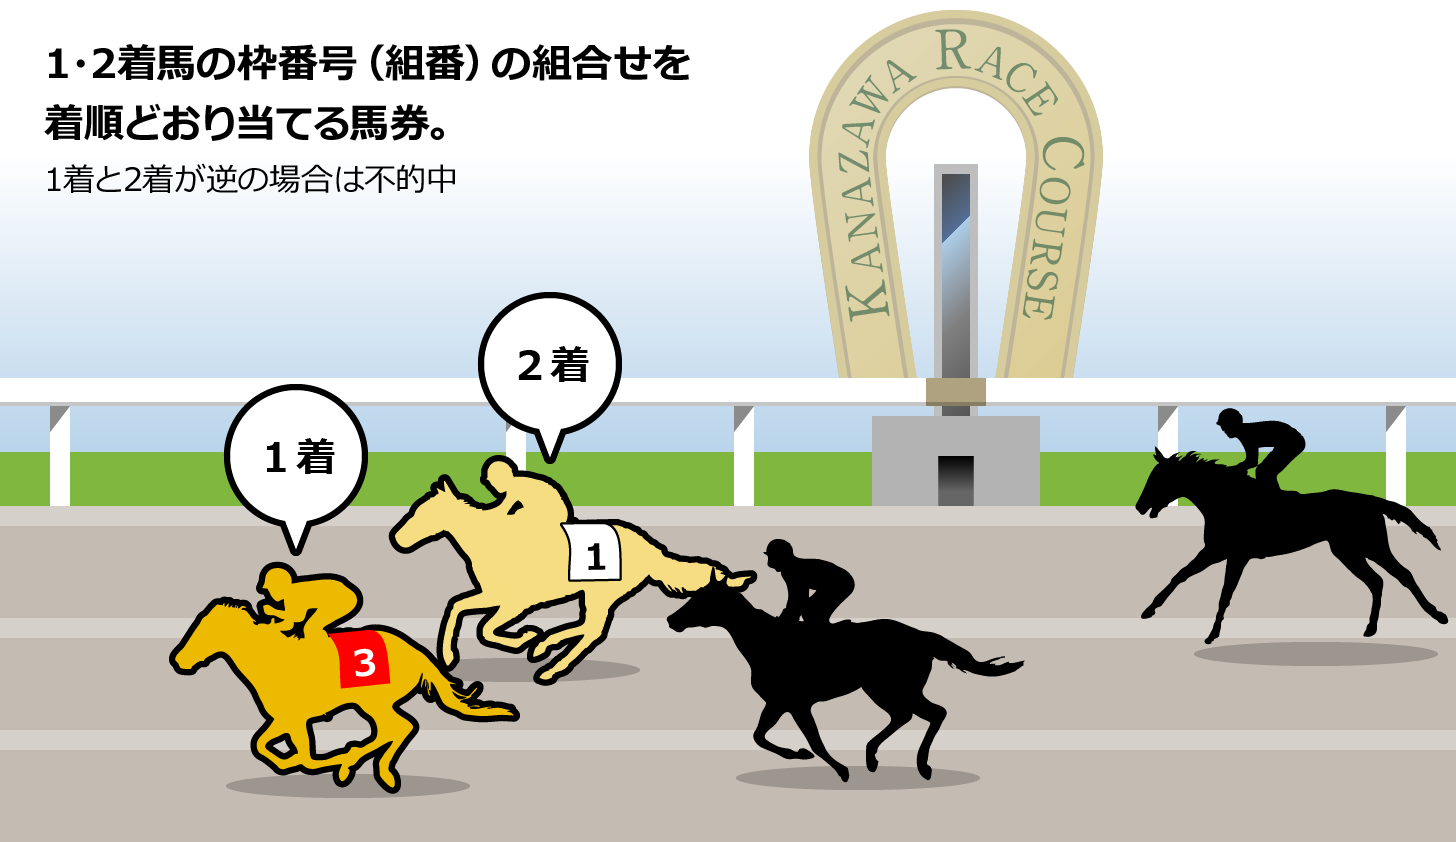 発売勝馬投票券 | 金沢競馬 Official Website -KANAZAWA Horse park-